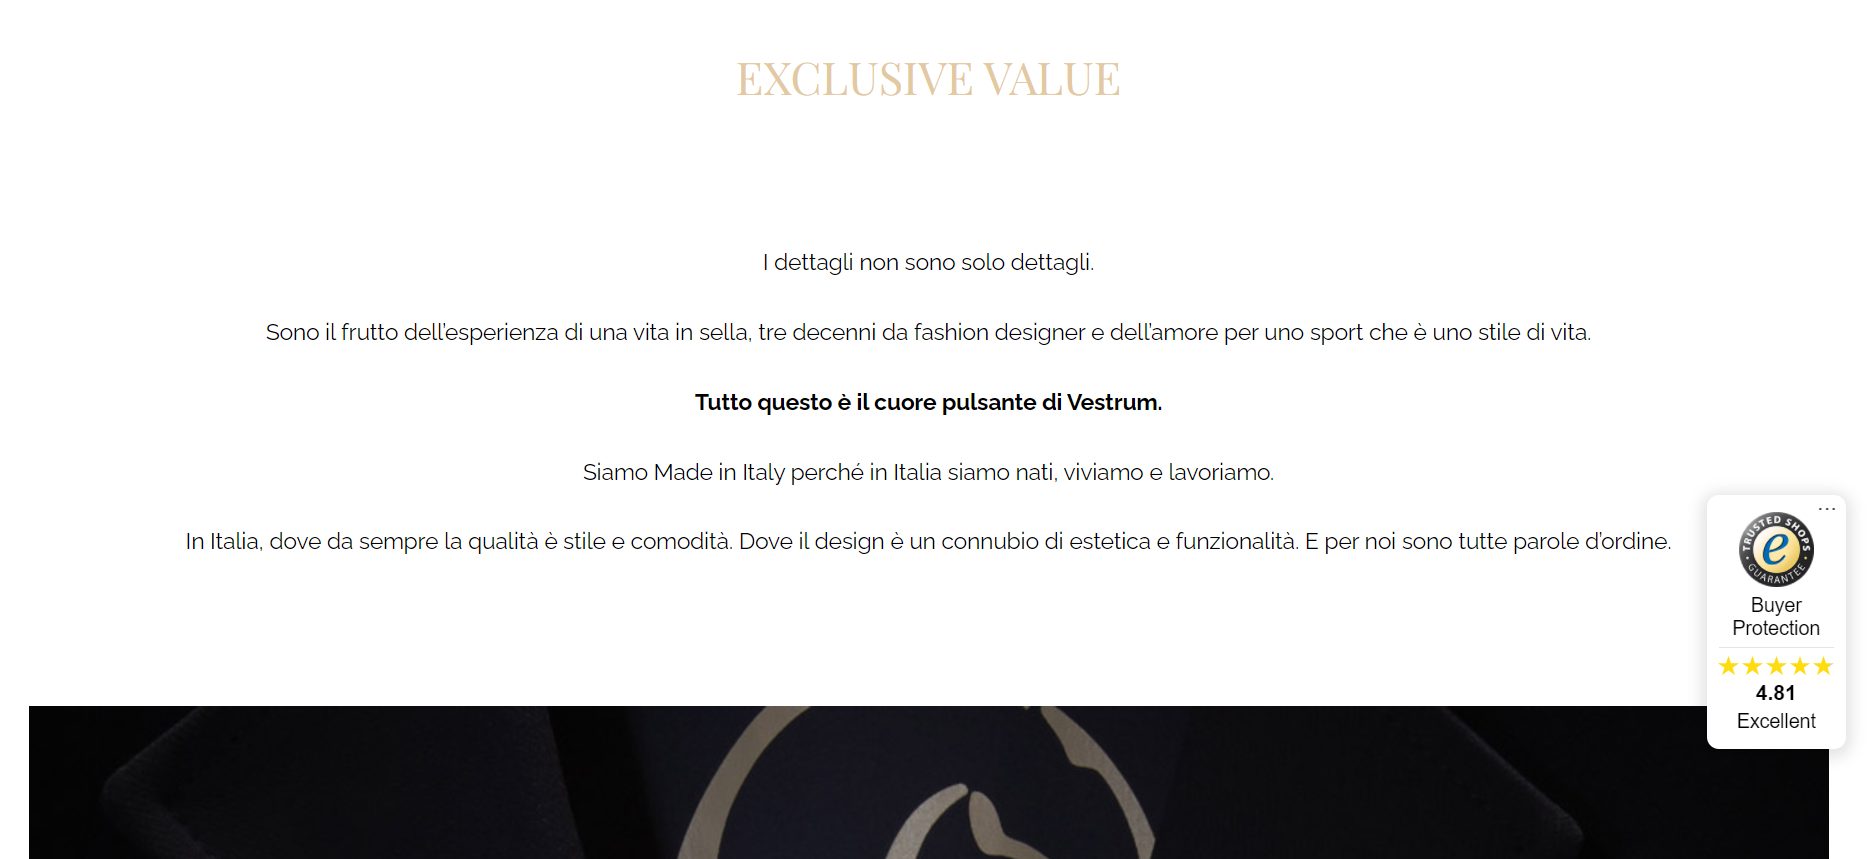 incipit della sezione Exclusive Value del sito web di Vestrum